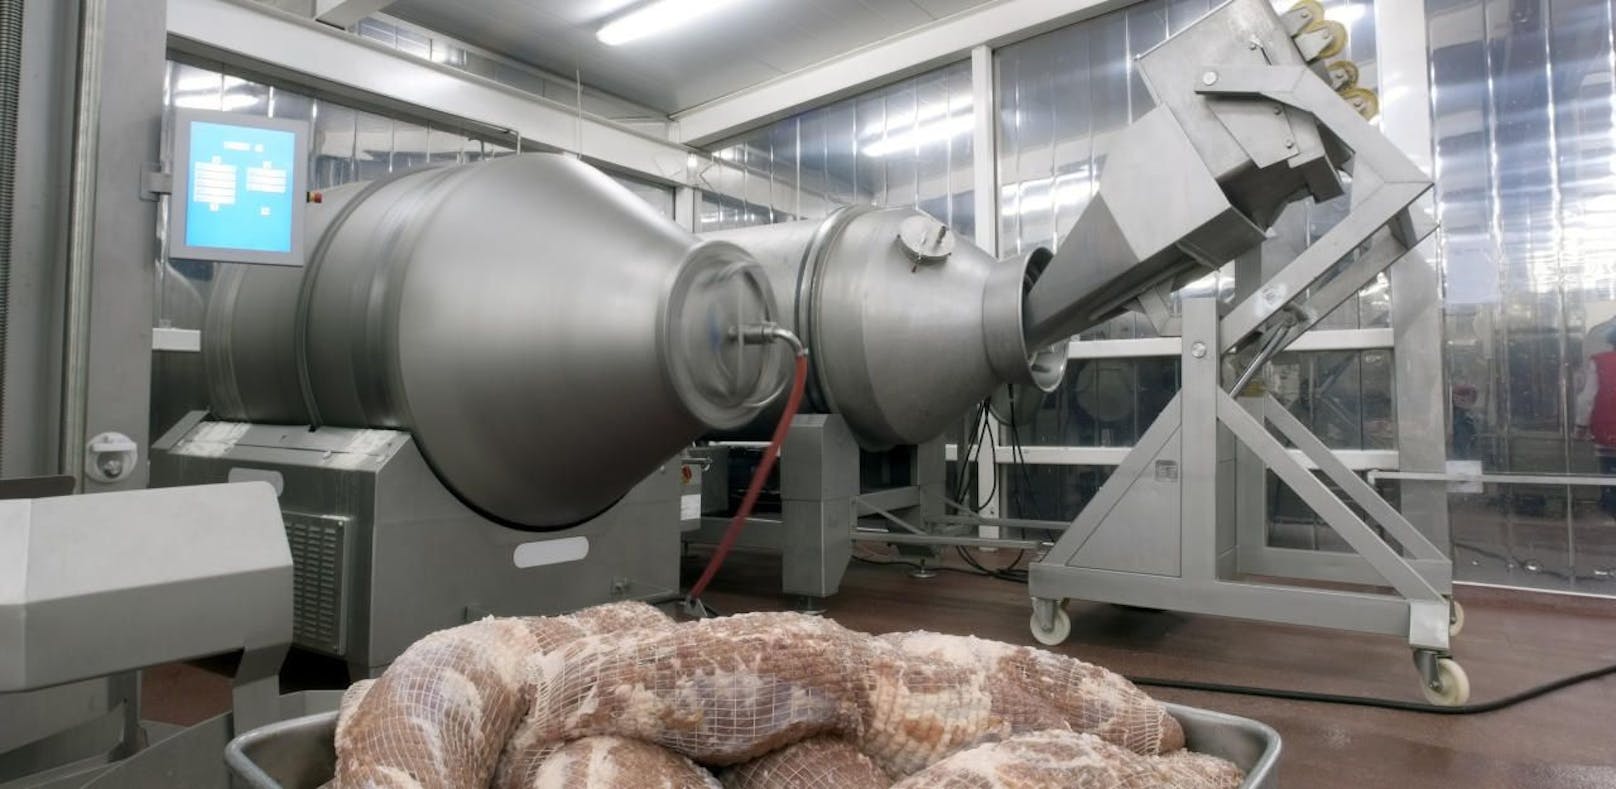 Maschinen für die fleischverarbeitende Industrie werden in dem Unternehmen erzeugt.